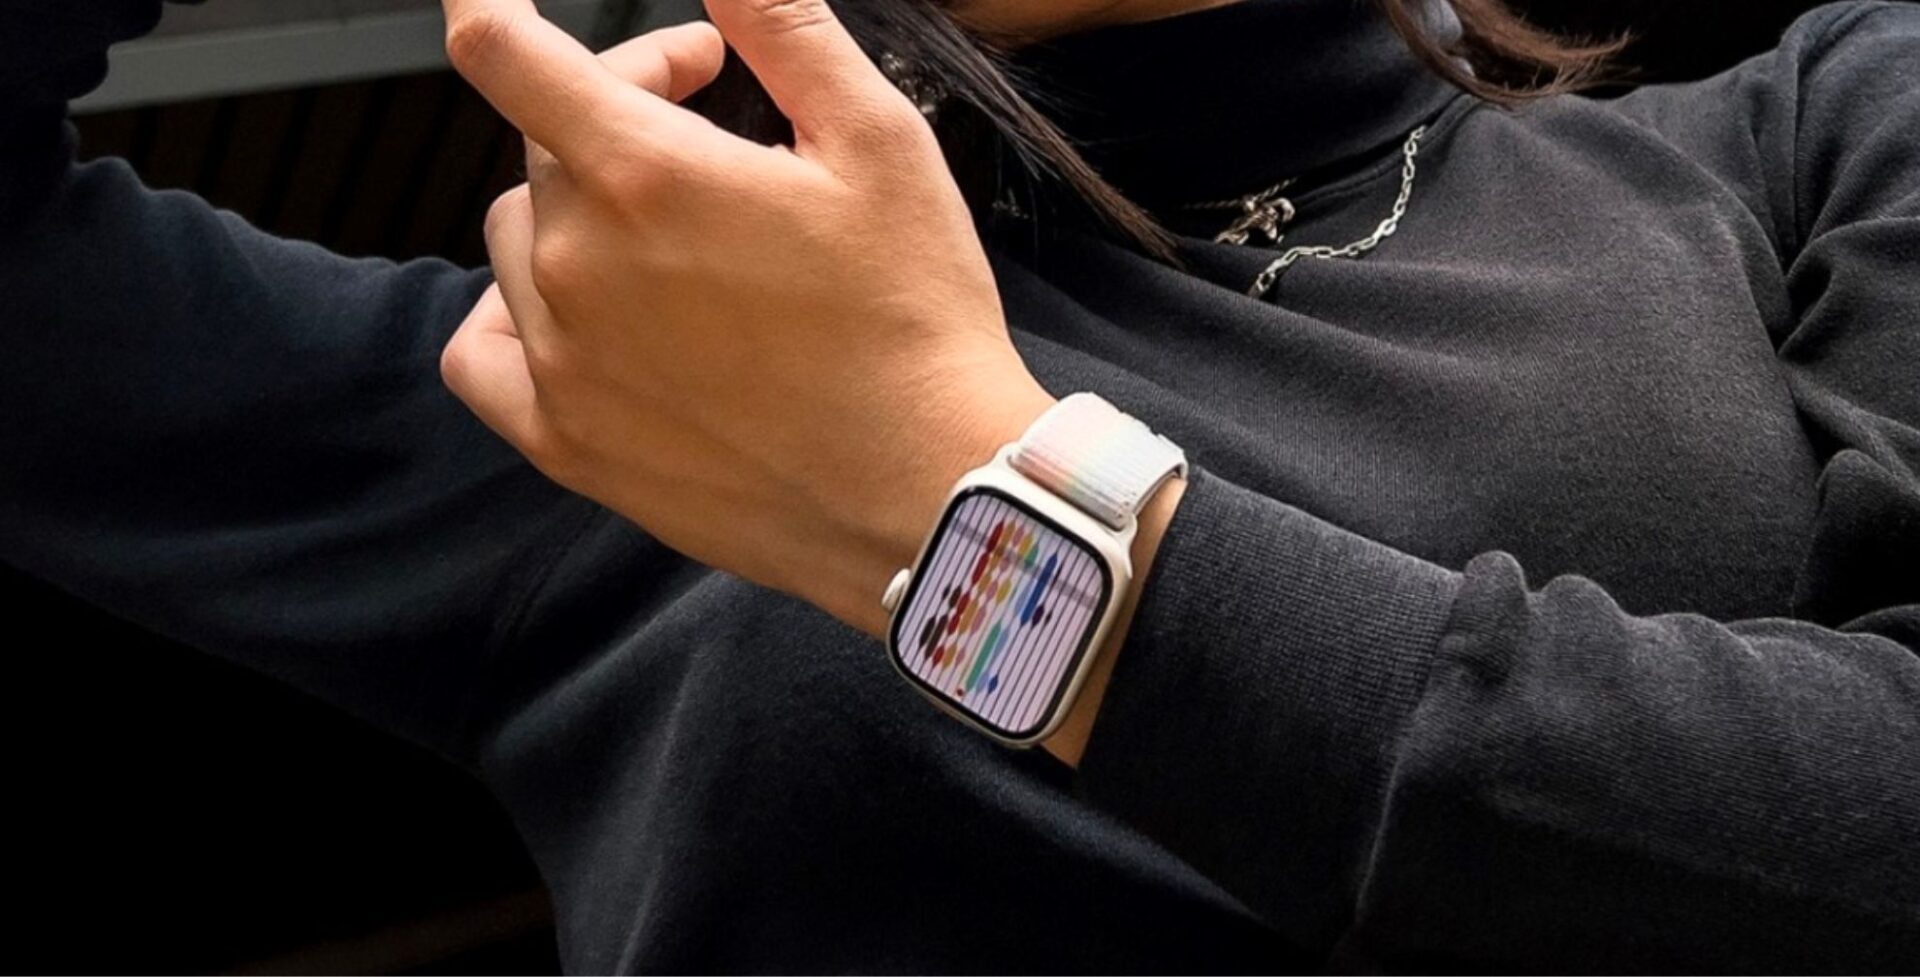 ส่วนแบ่งตลาด Apple Watch คงที่ ทั้งโลกเกือบ 50% ด้าน Samsung โดน Huawei กดดันยอดขายหนัก